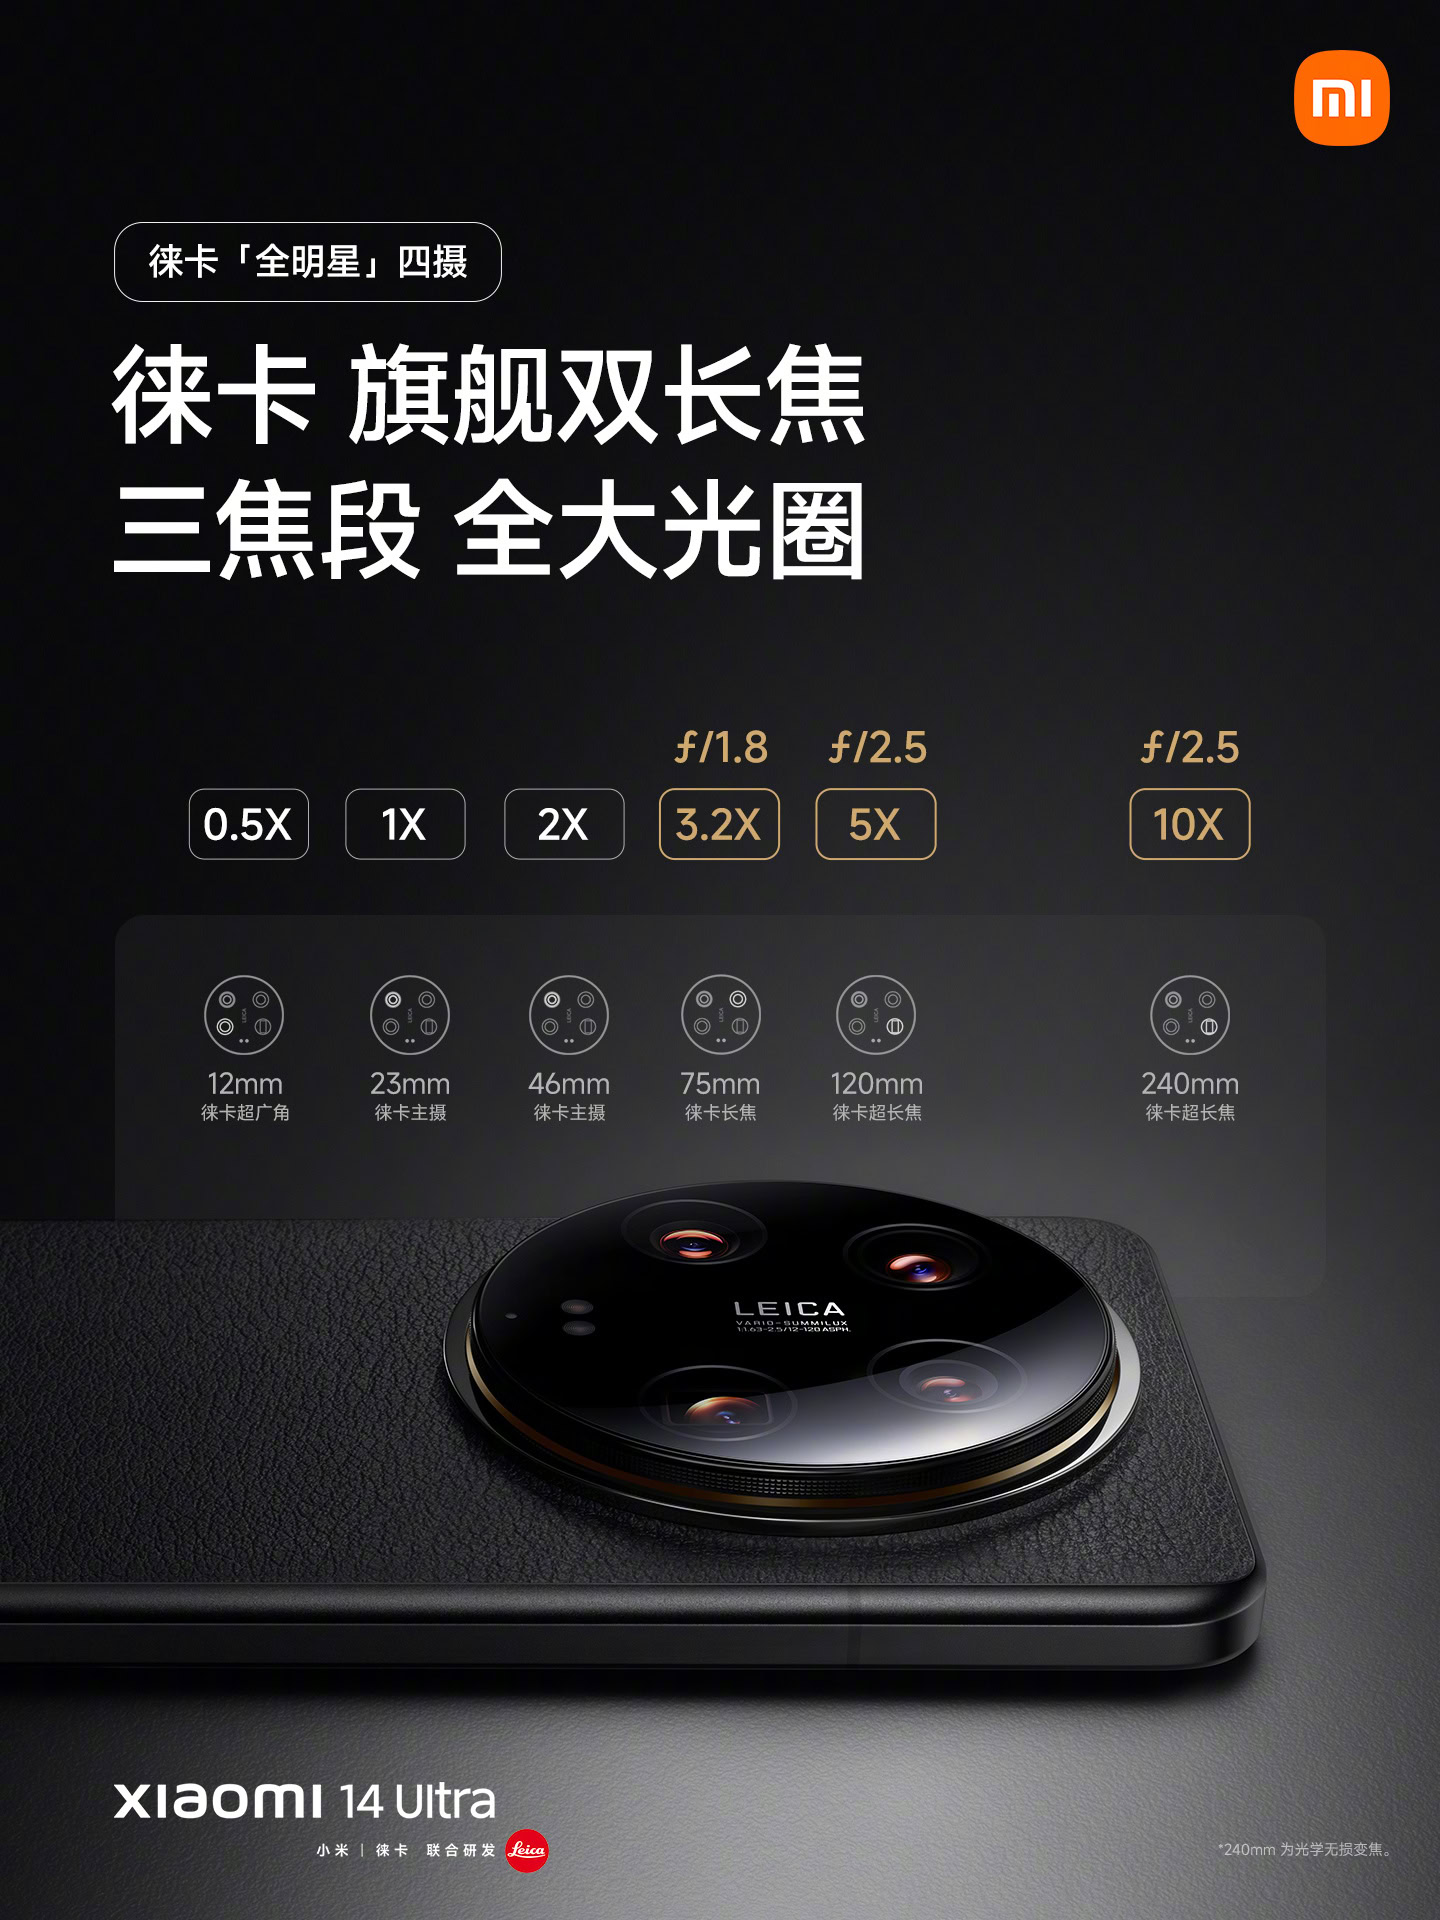 Xiaomi 14 Pro Specs and Price Philippines